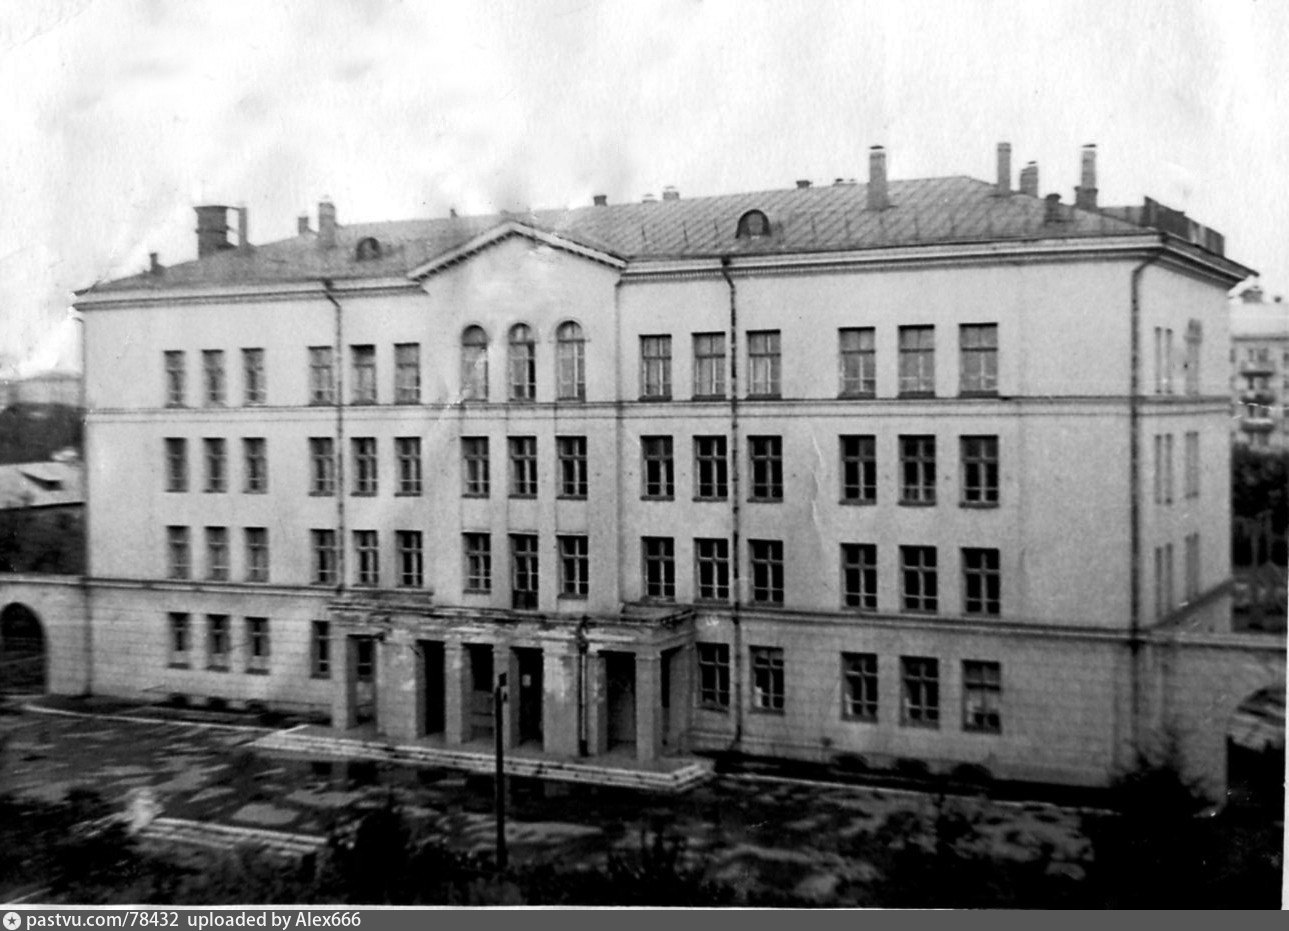 Школа 394 москва старые фото